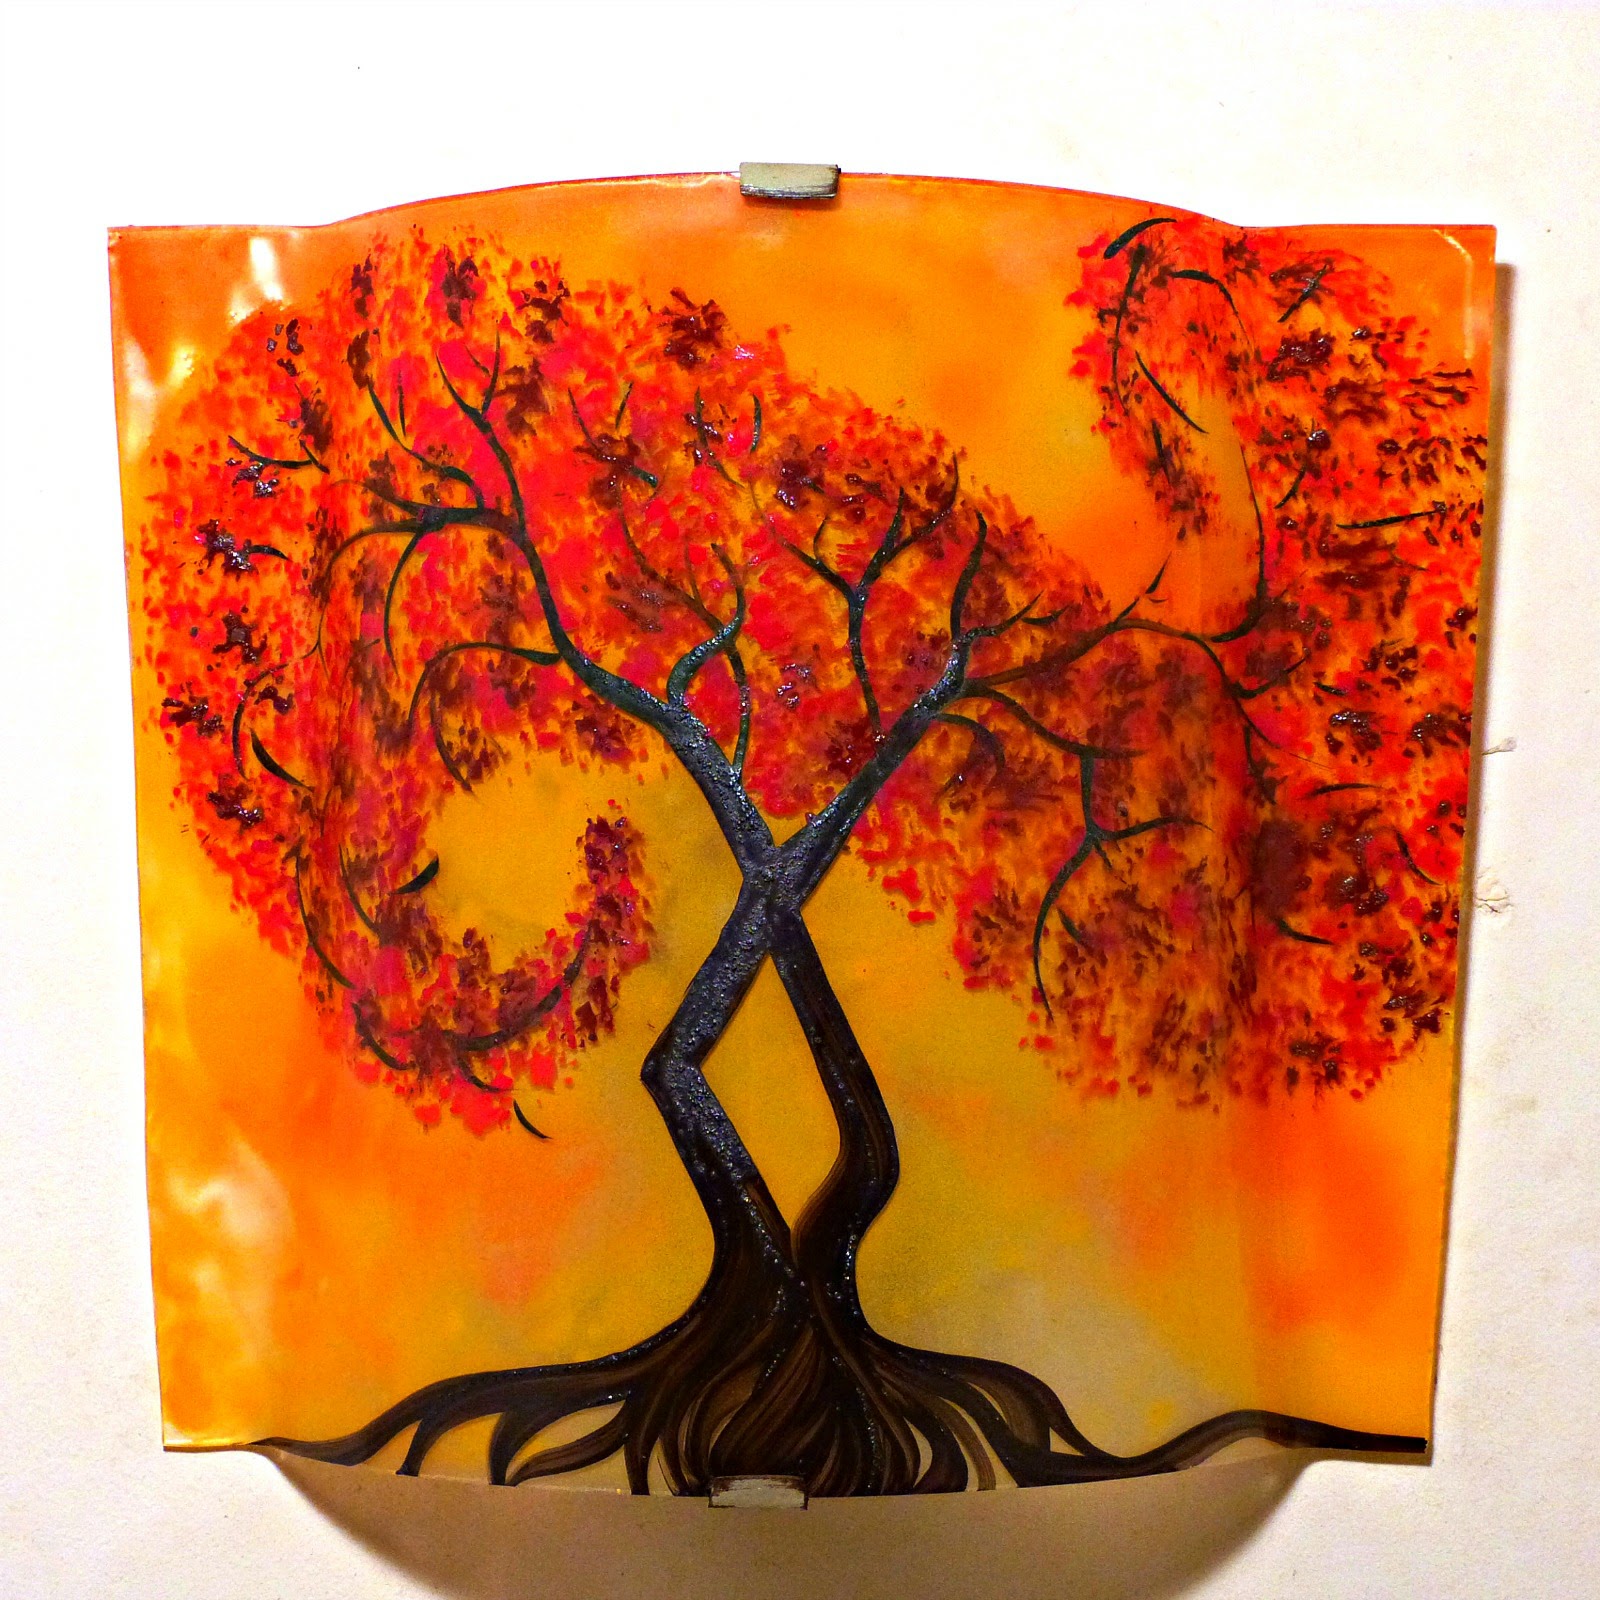 Luminaire applique murale jaune orange motif l arbre a volute rouge couleur personnalisable 4